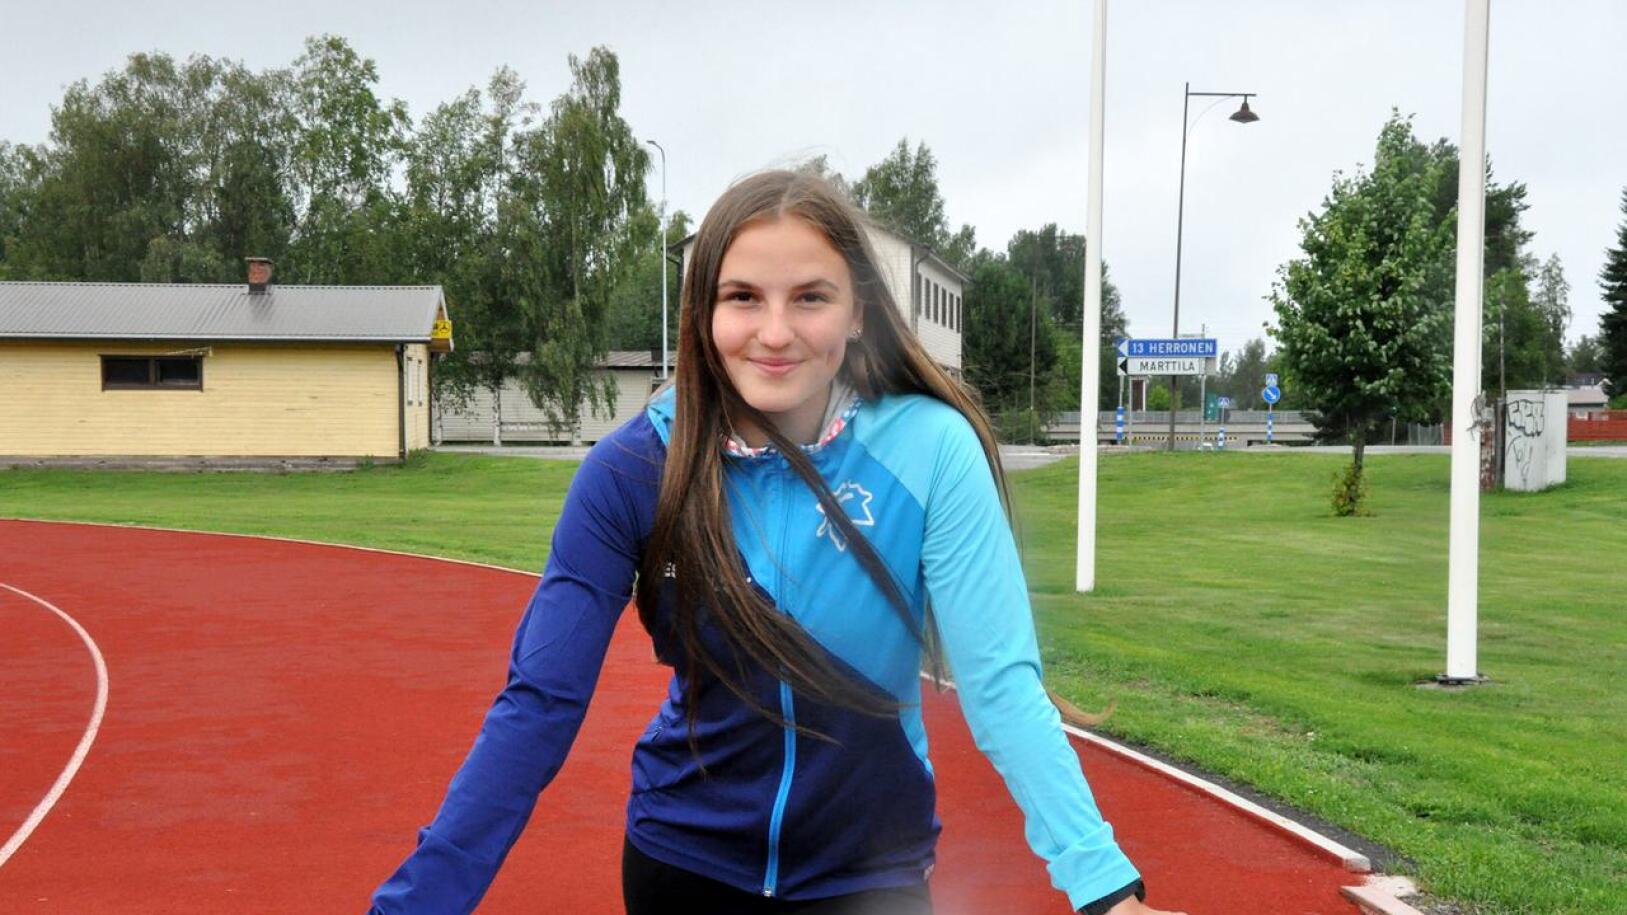 Estejuoksu on Melissa Kykyrin päämatka, mutta maantiejuoksussakin kulki Suomen mestaruuden arvoisesti.